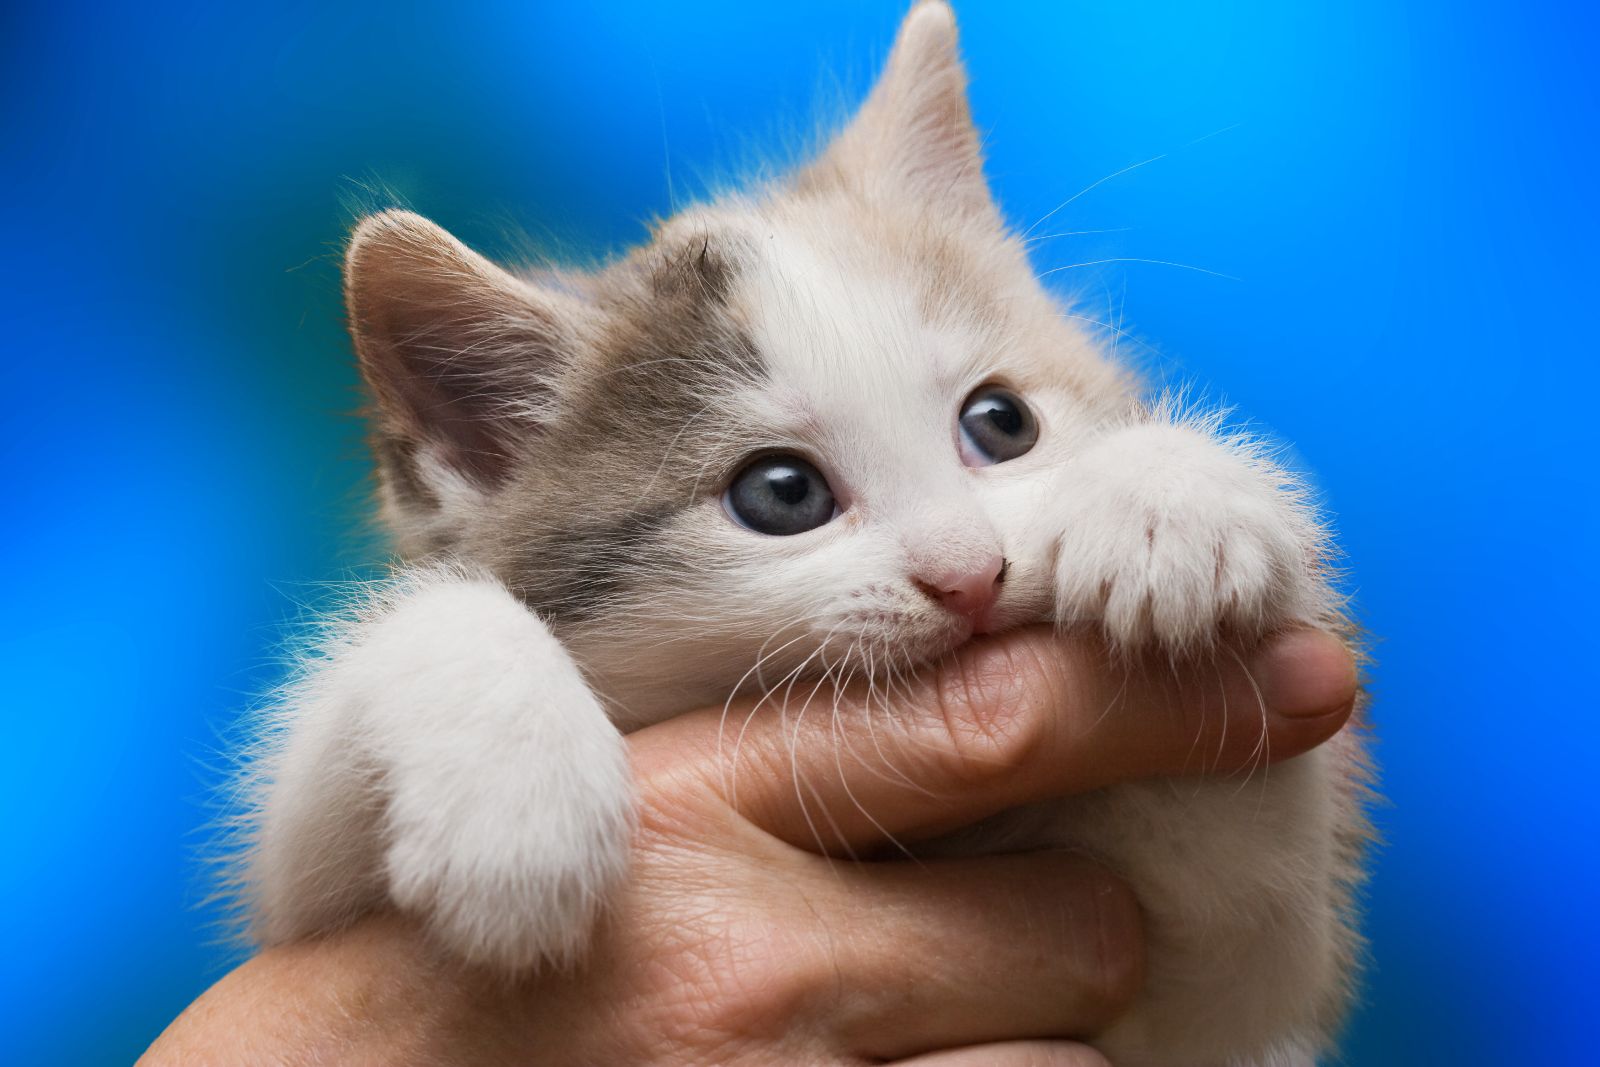 Gatito mordiendo un dedo de una mano en fondo azul